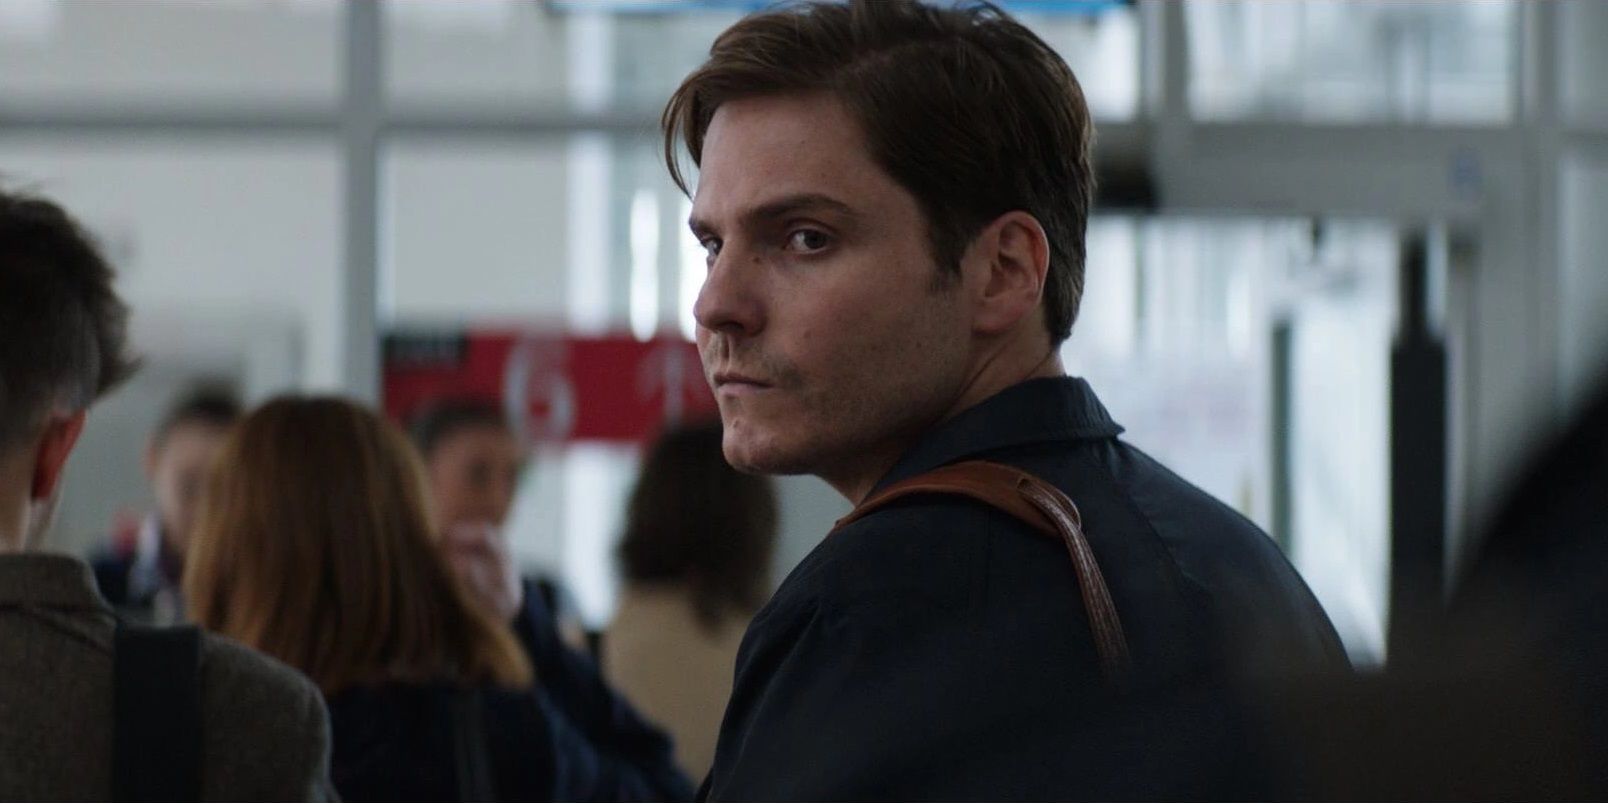 Daniel Bruhl as Helmut Zemo in an airport in Captain America Civil War